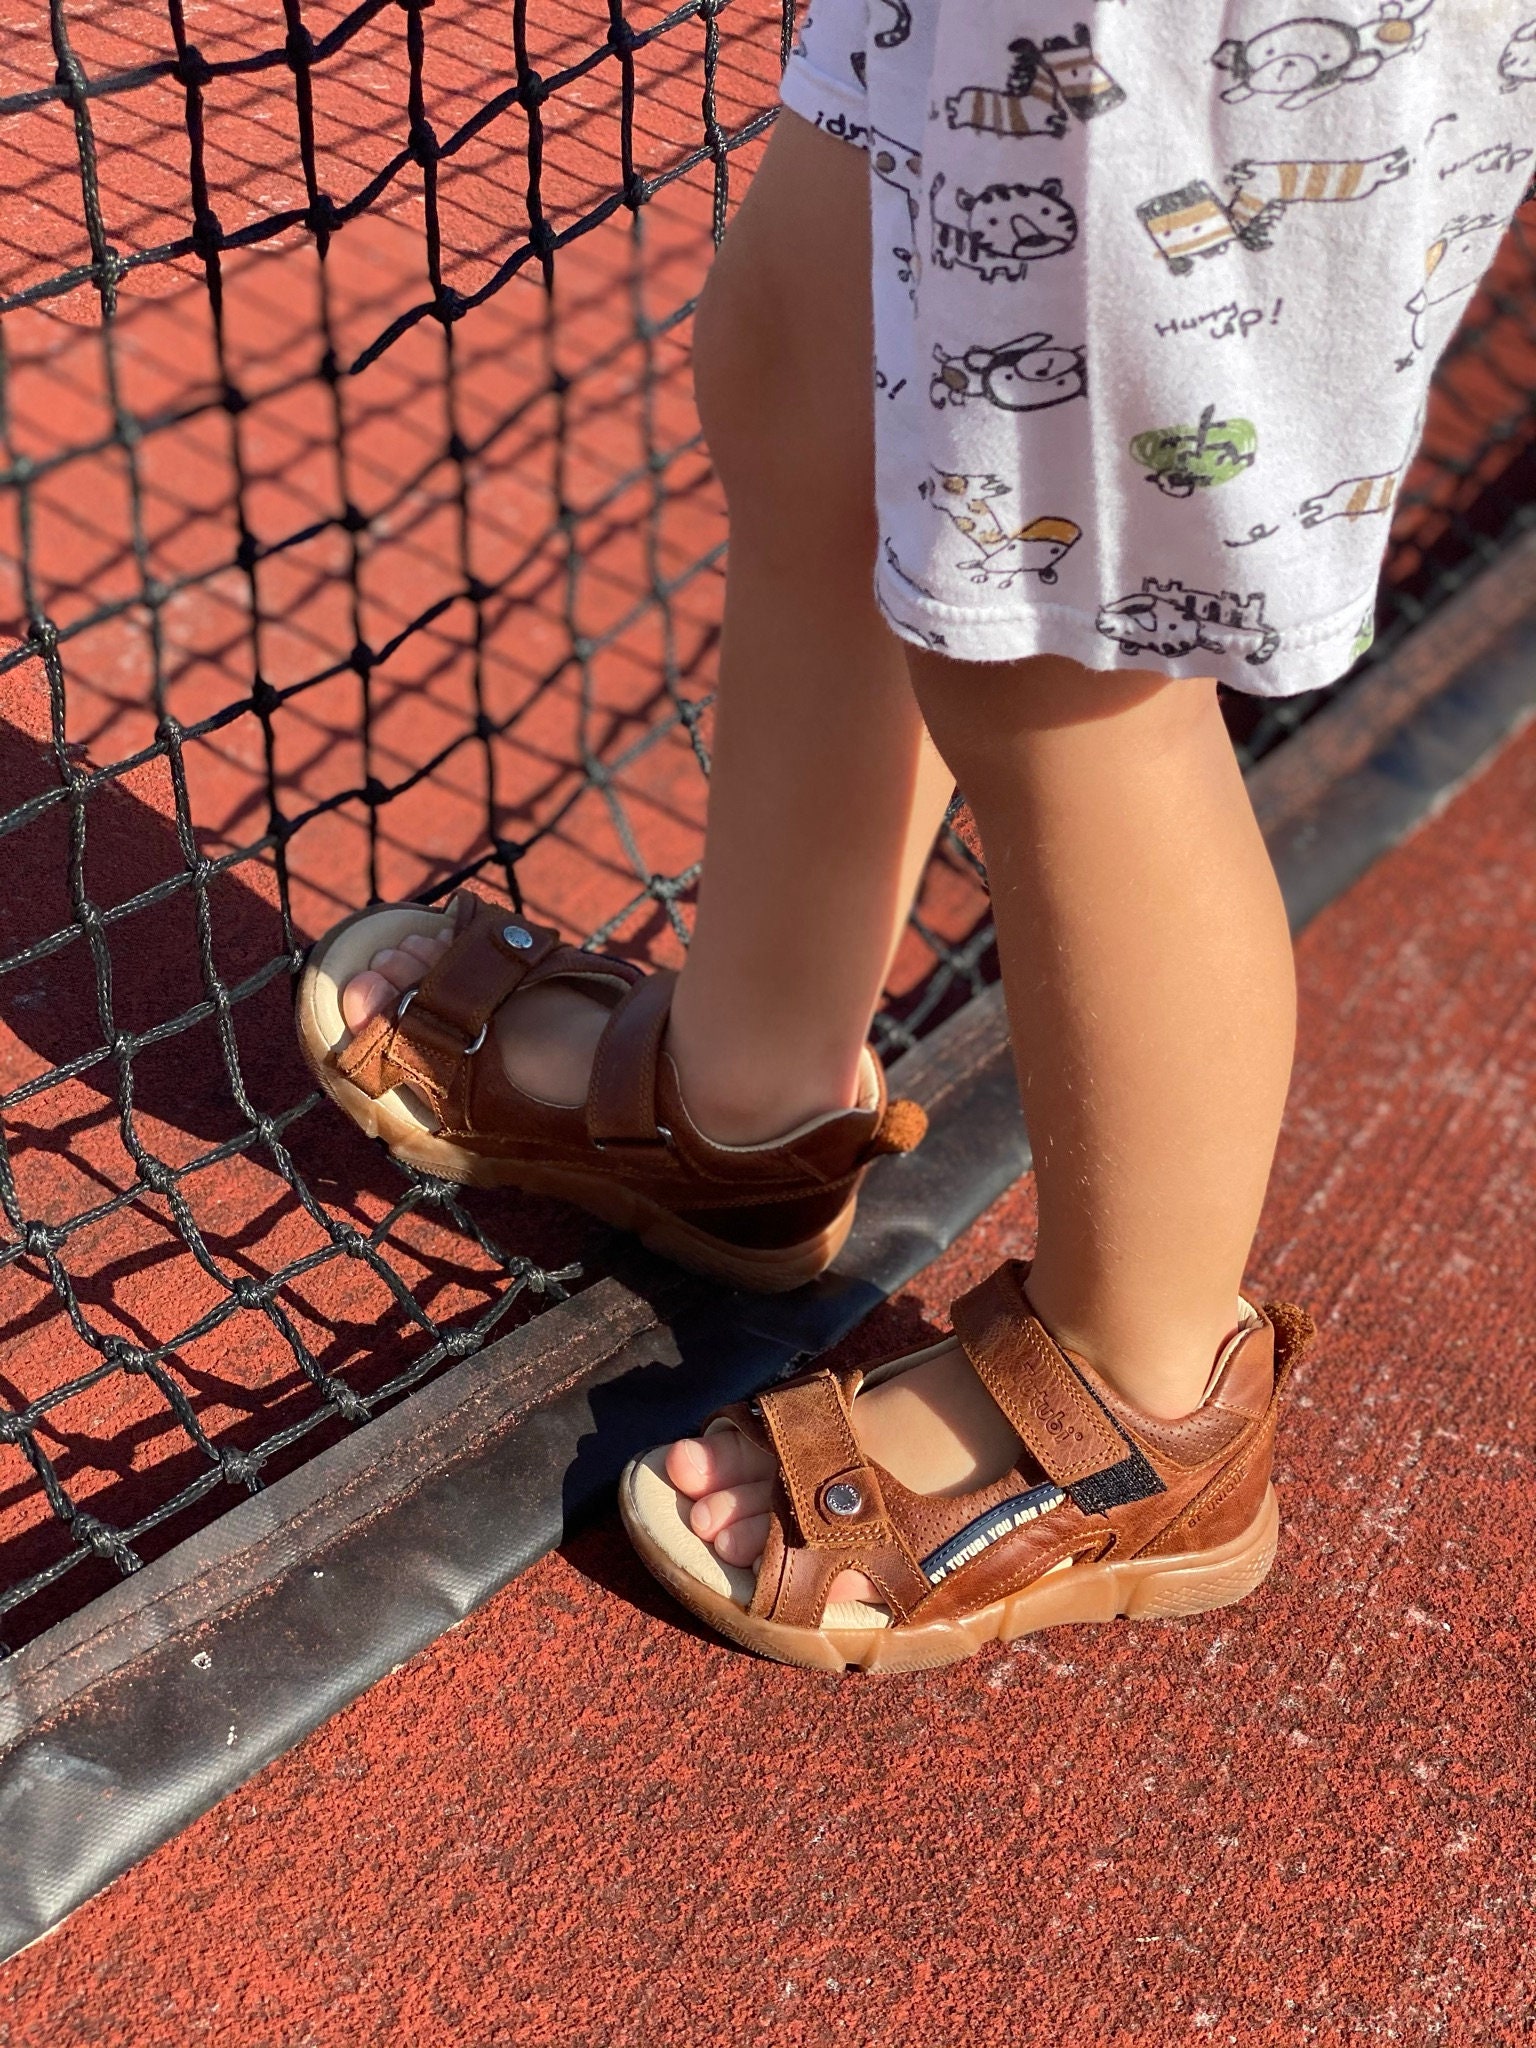 Schoenen Jongensschoenen Loafers & Instappers Lederen sandalen met klittenband sluiting jongen peuters schoenen 